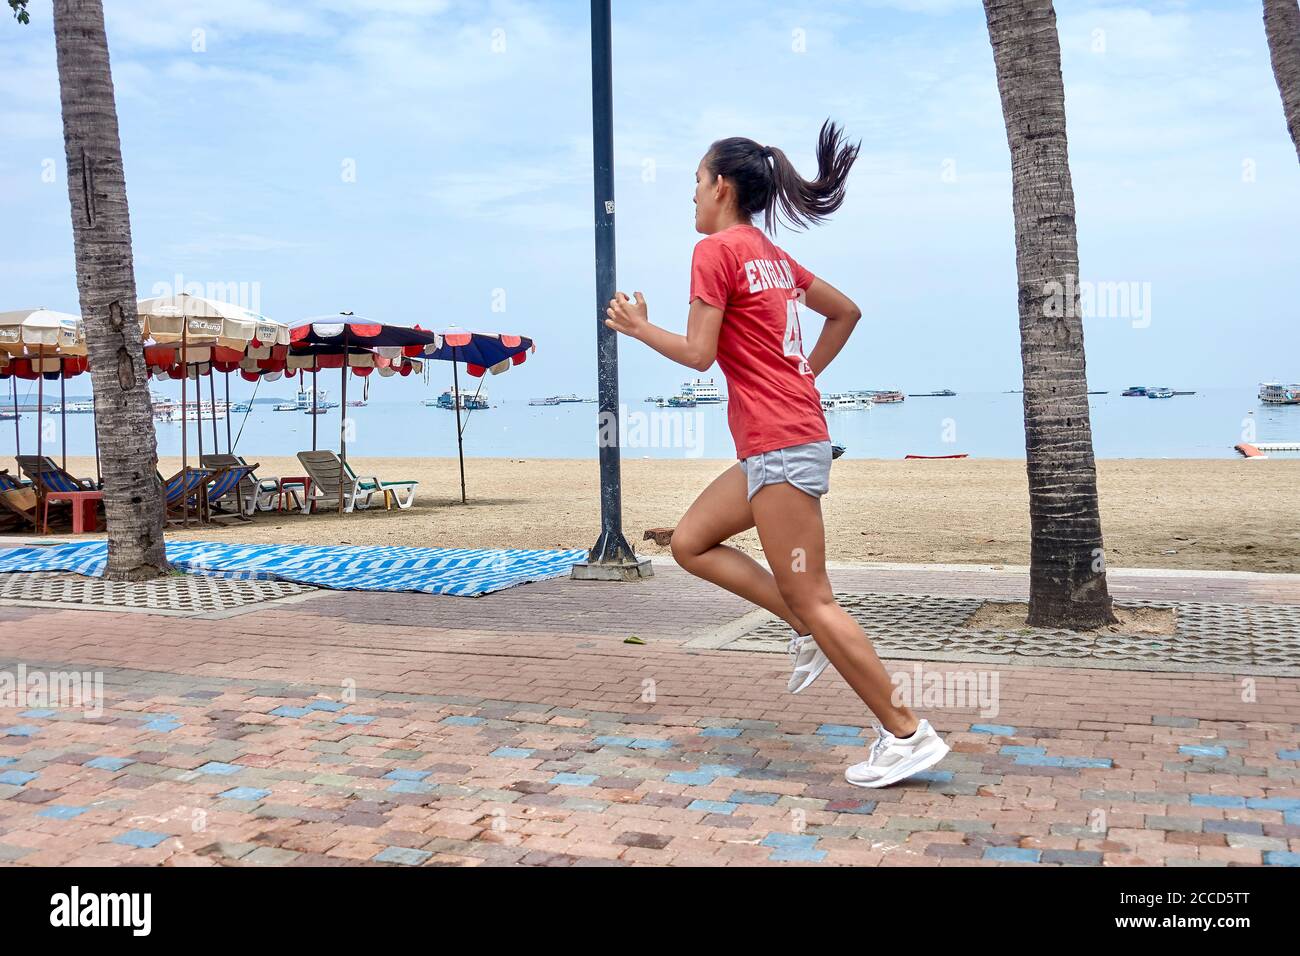 Frau läuft am Strand entlang, Frau halten fit Übung. Menschen trainieren. Thailand Südostasien Stockfoto